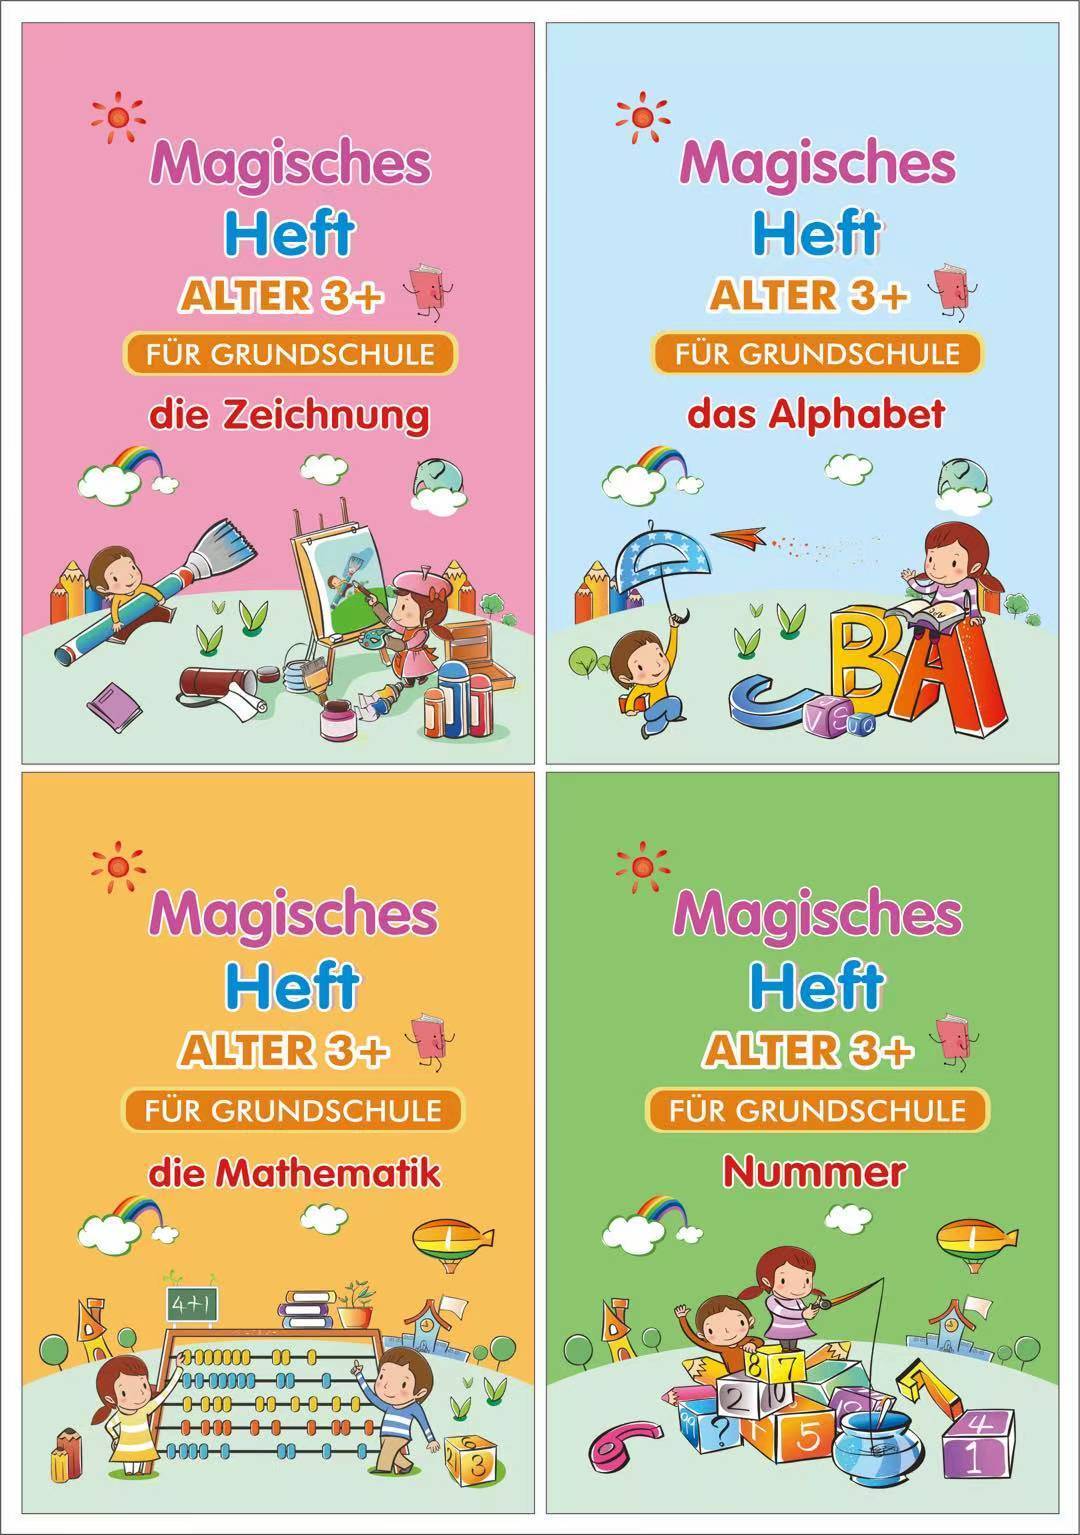 A Magisches Kalligraphie-Heft magisches Schreibpaste-Kindergartengeschenk für Studentenkunstbedarf 